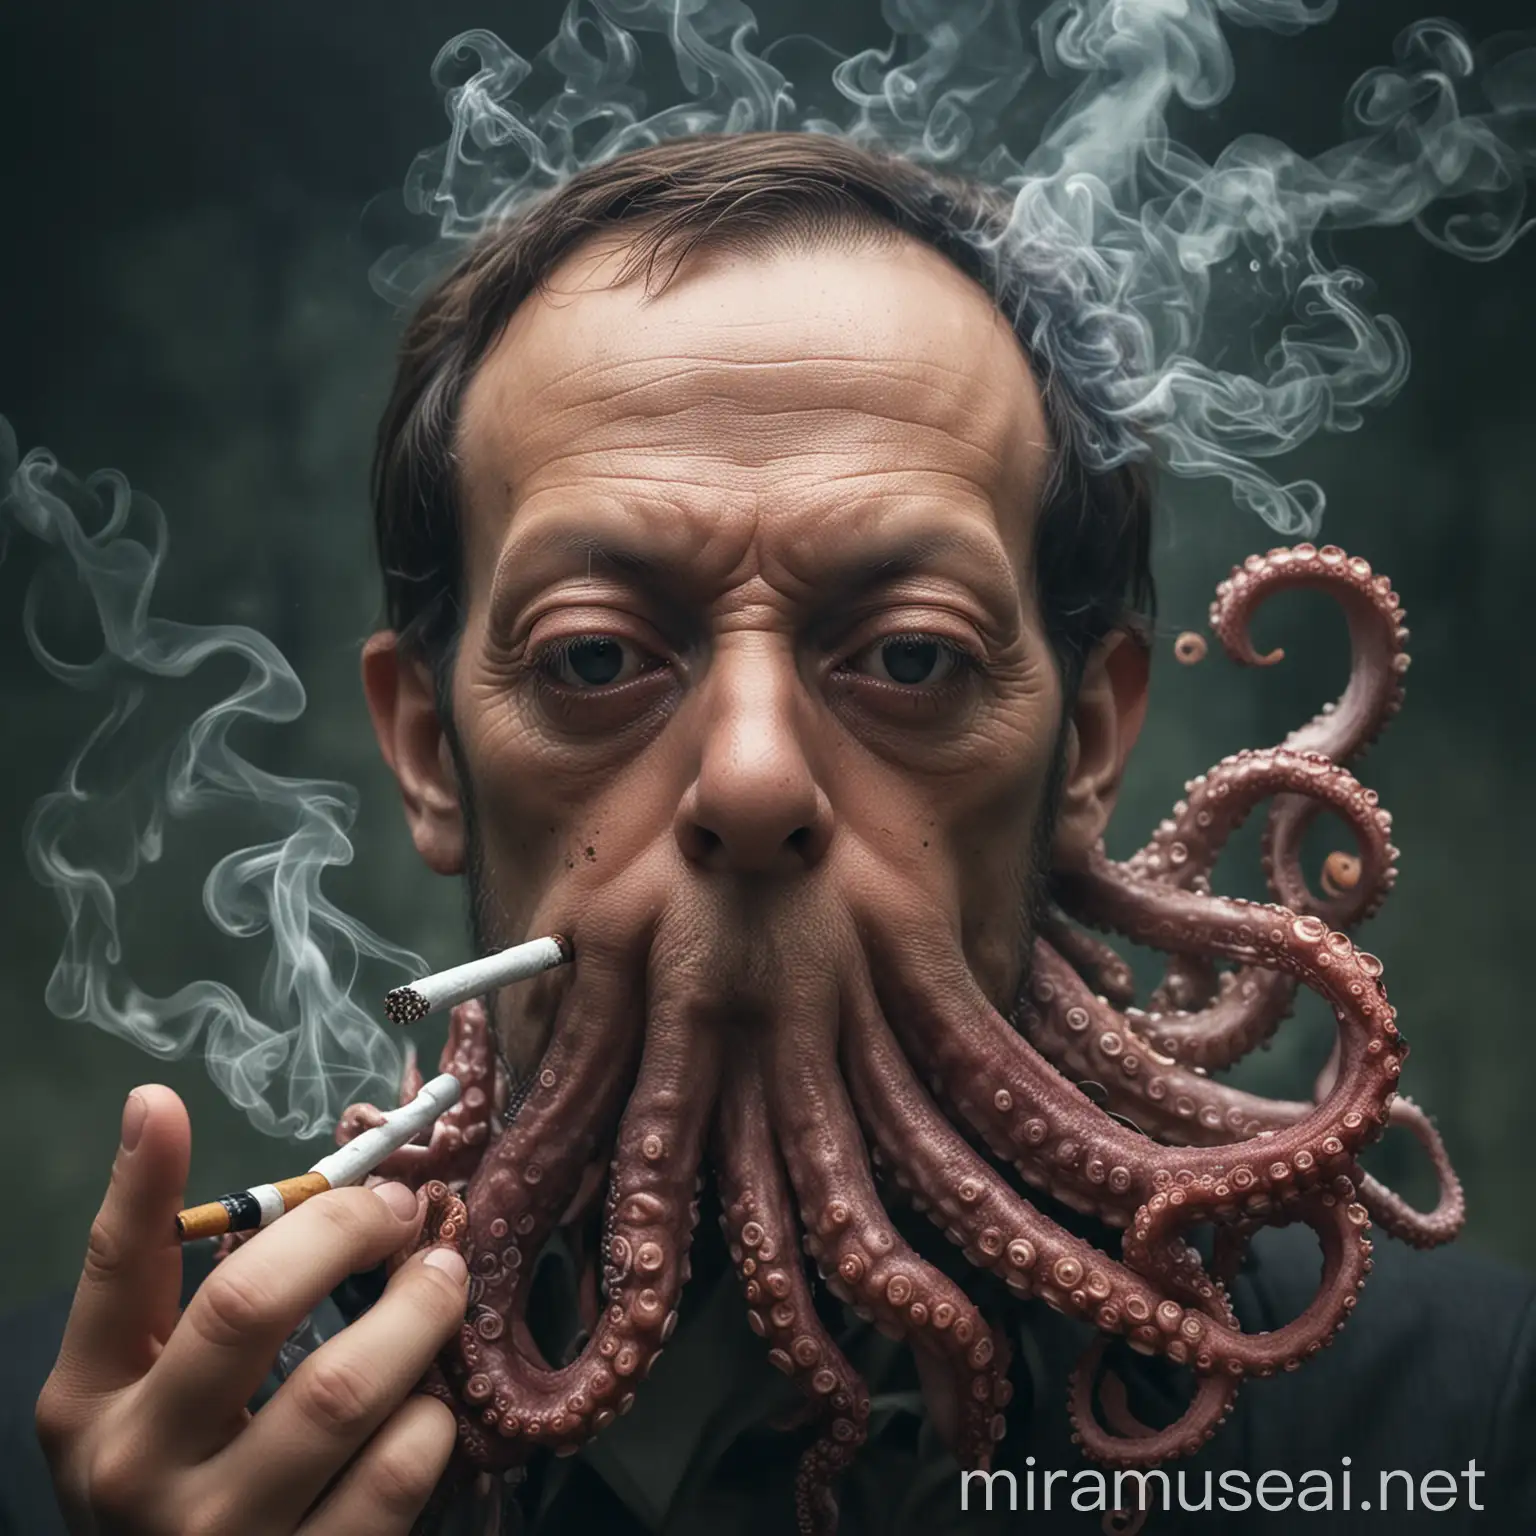 octopus with human face smoking, real life